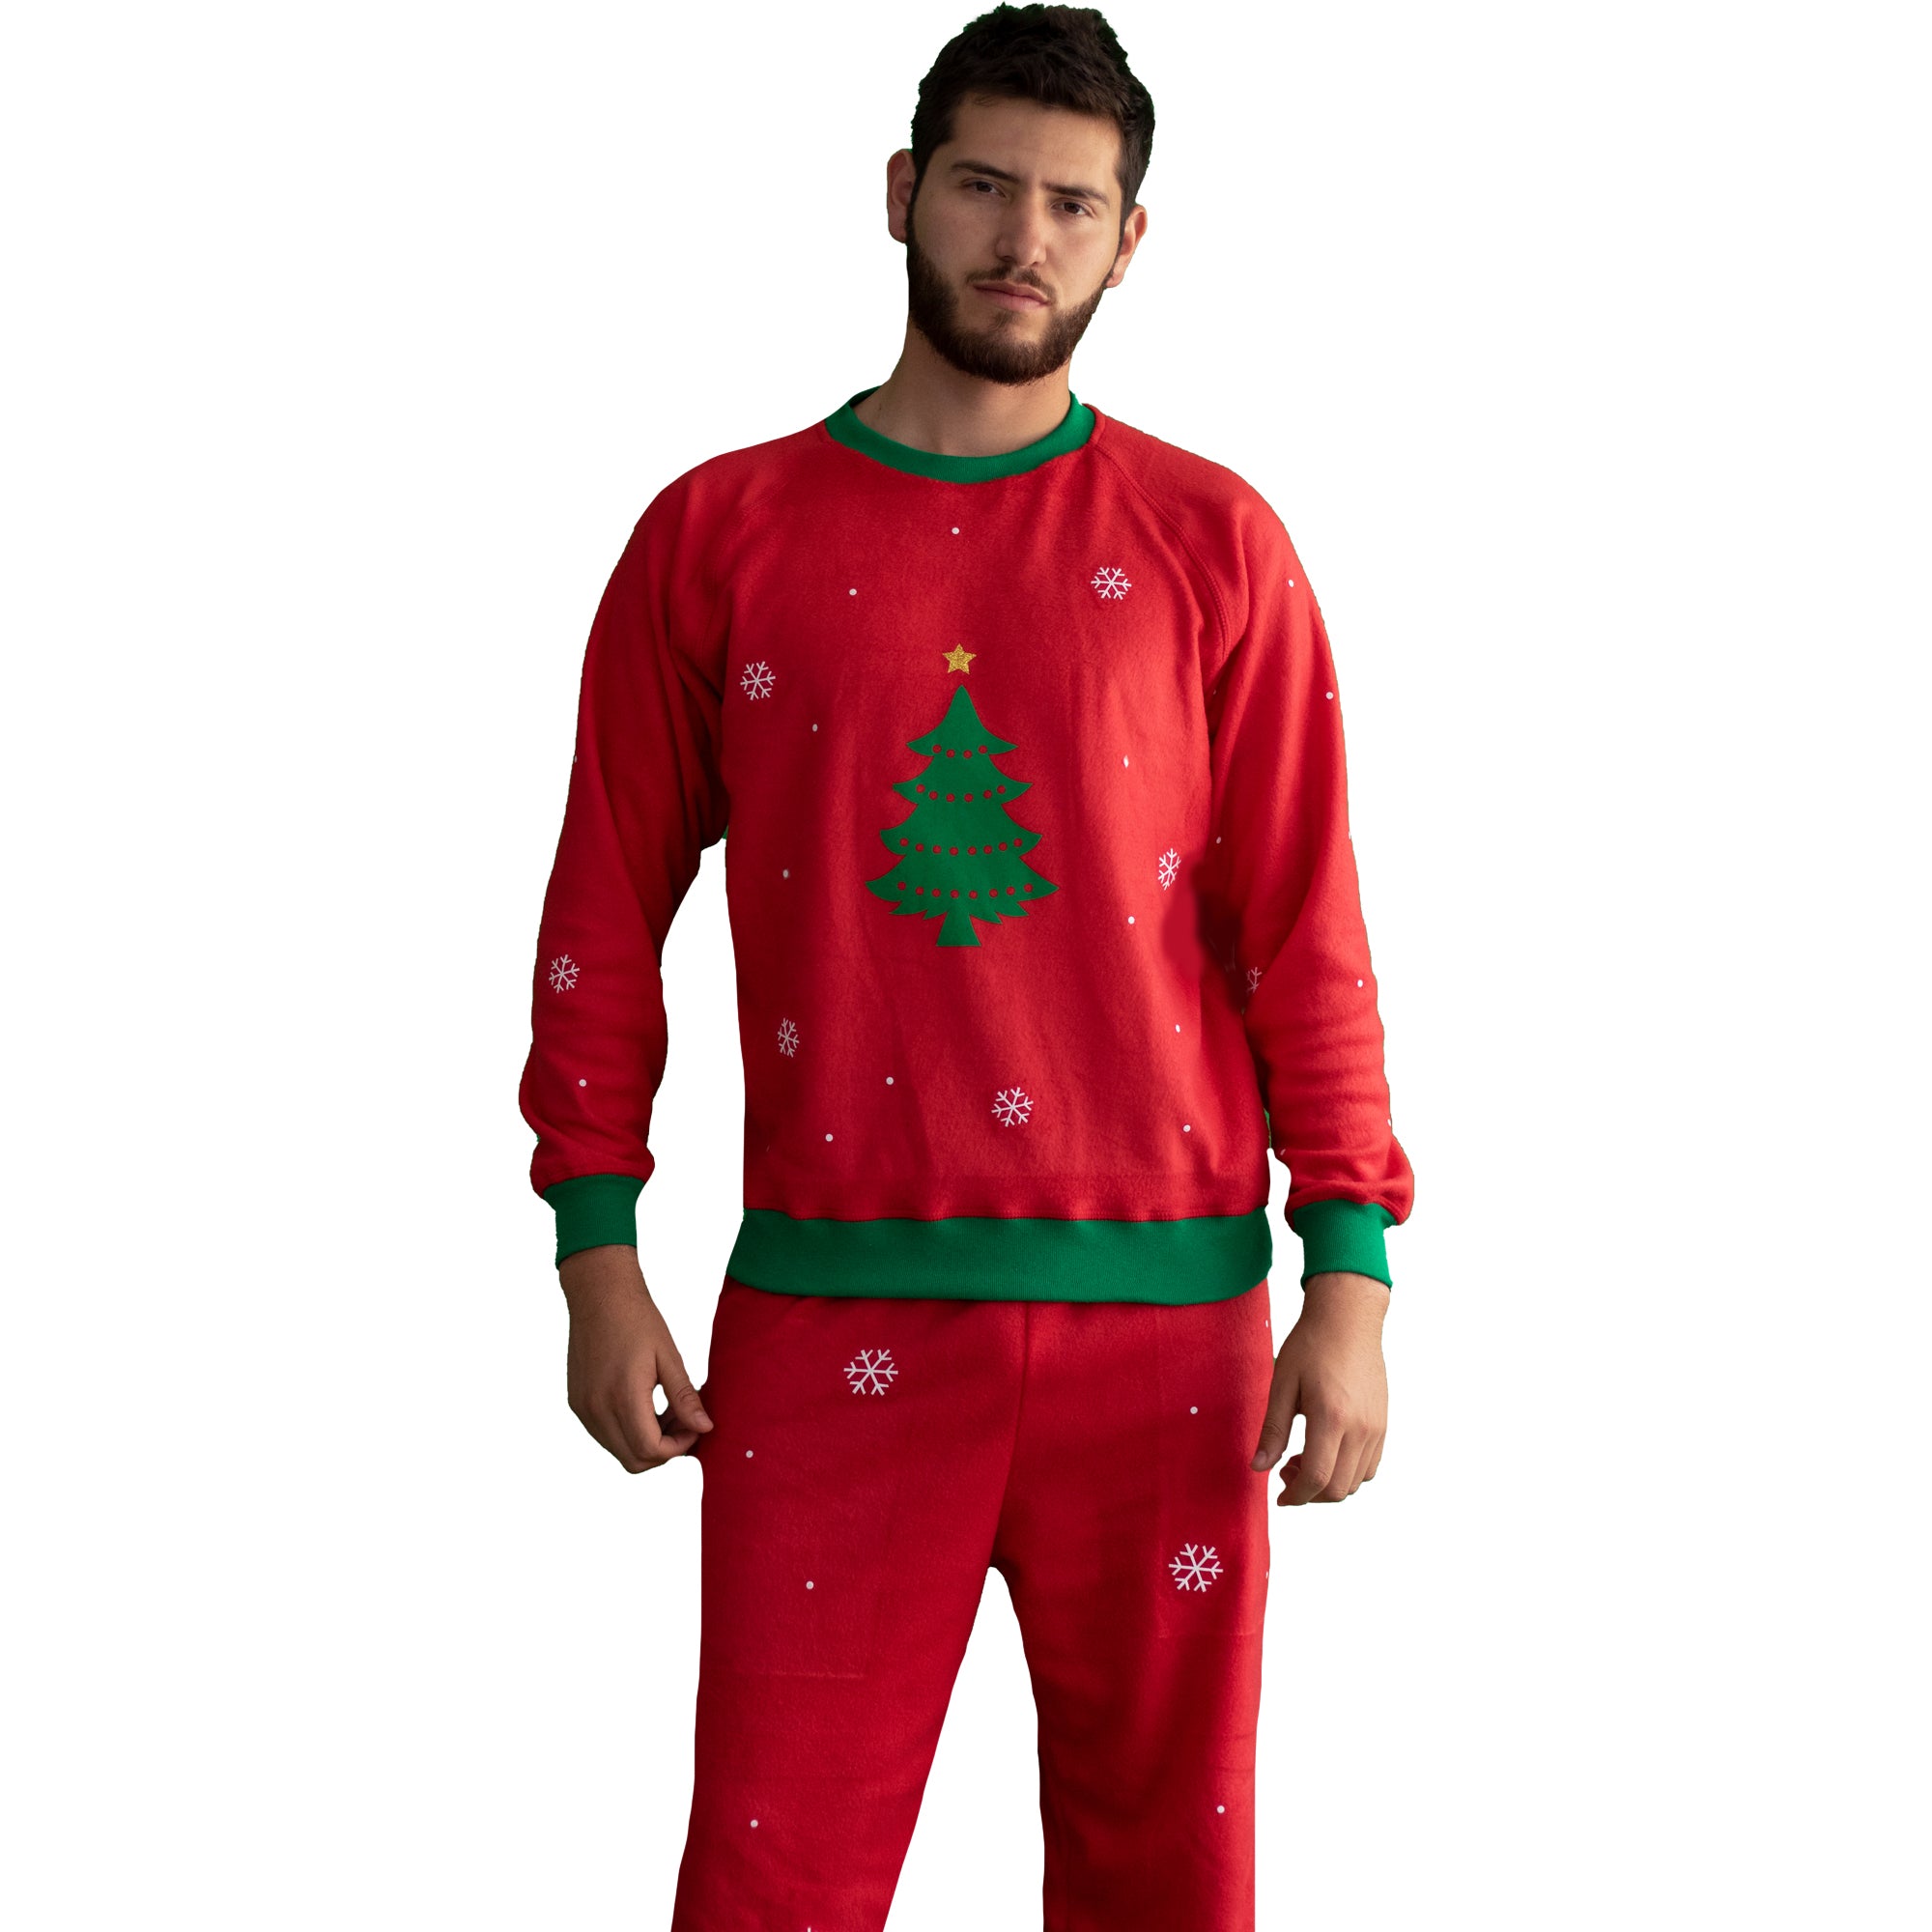 pijama de hombre navidad roja con arbol en el saco